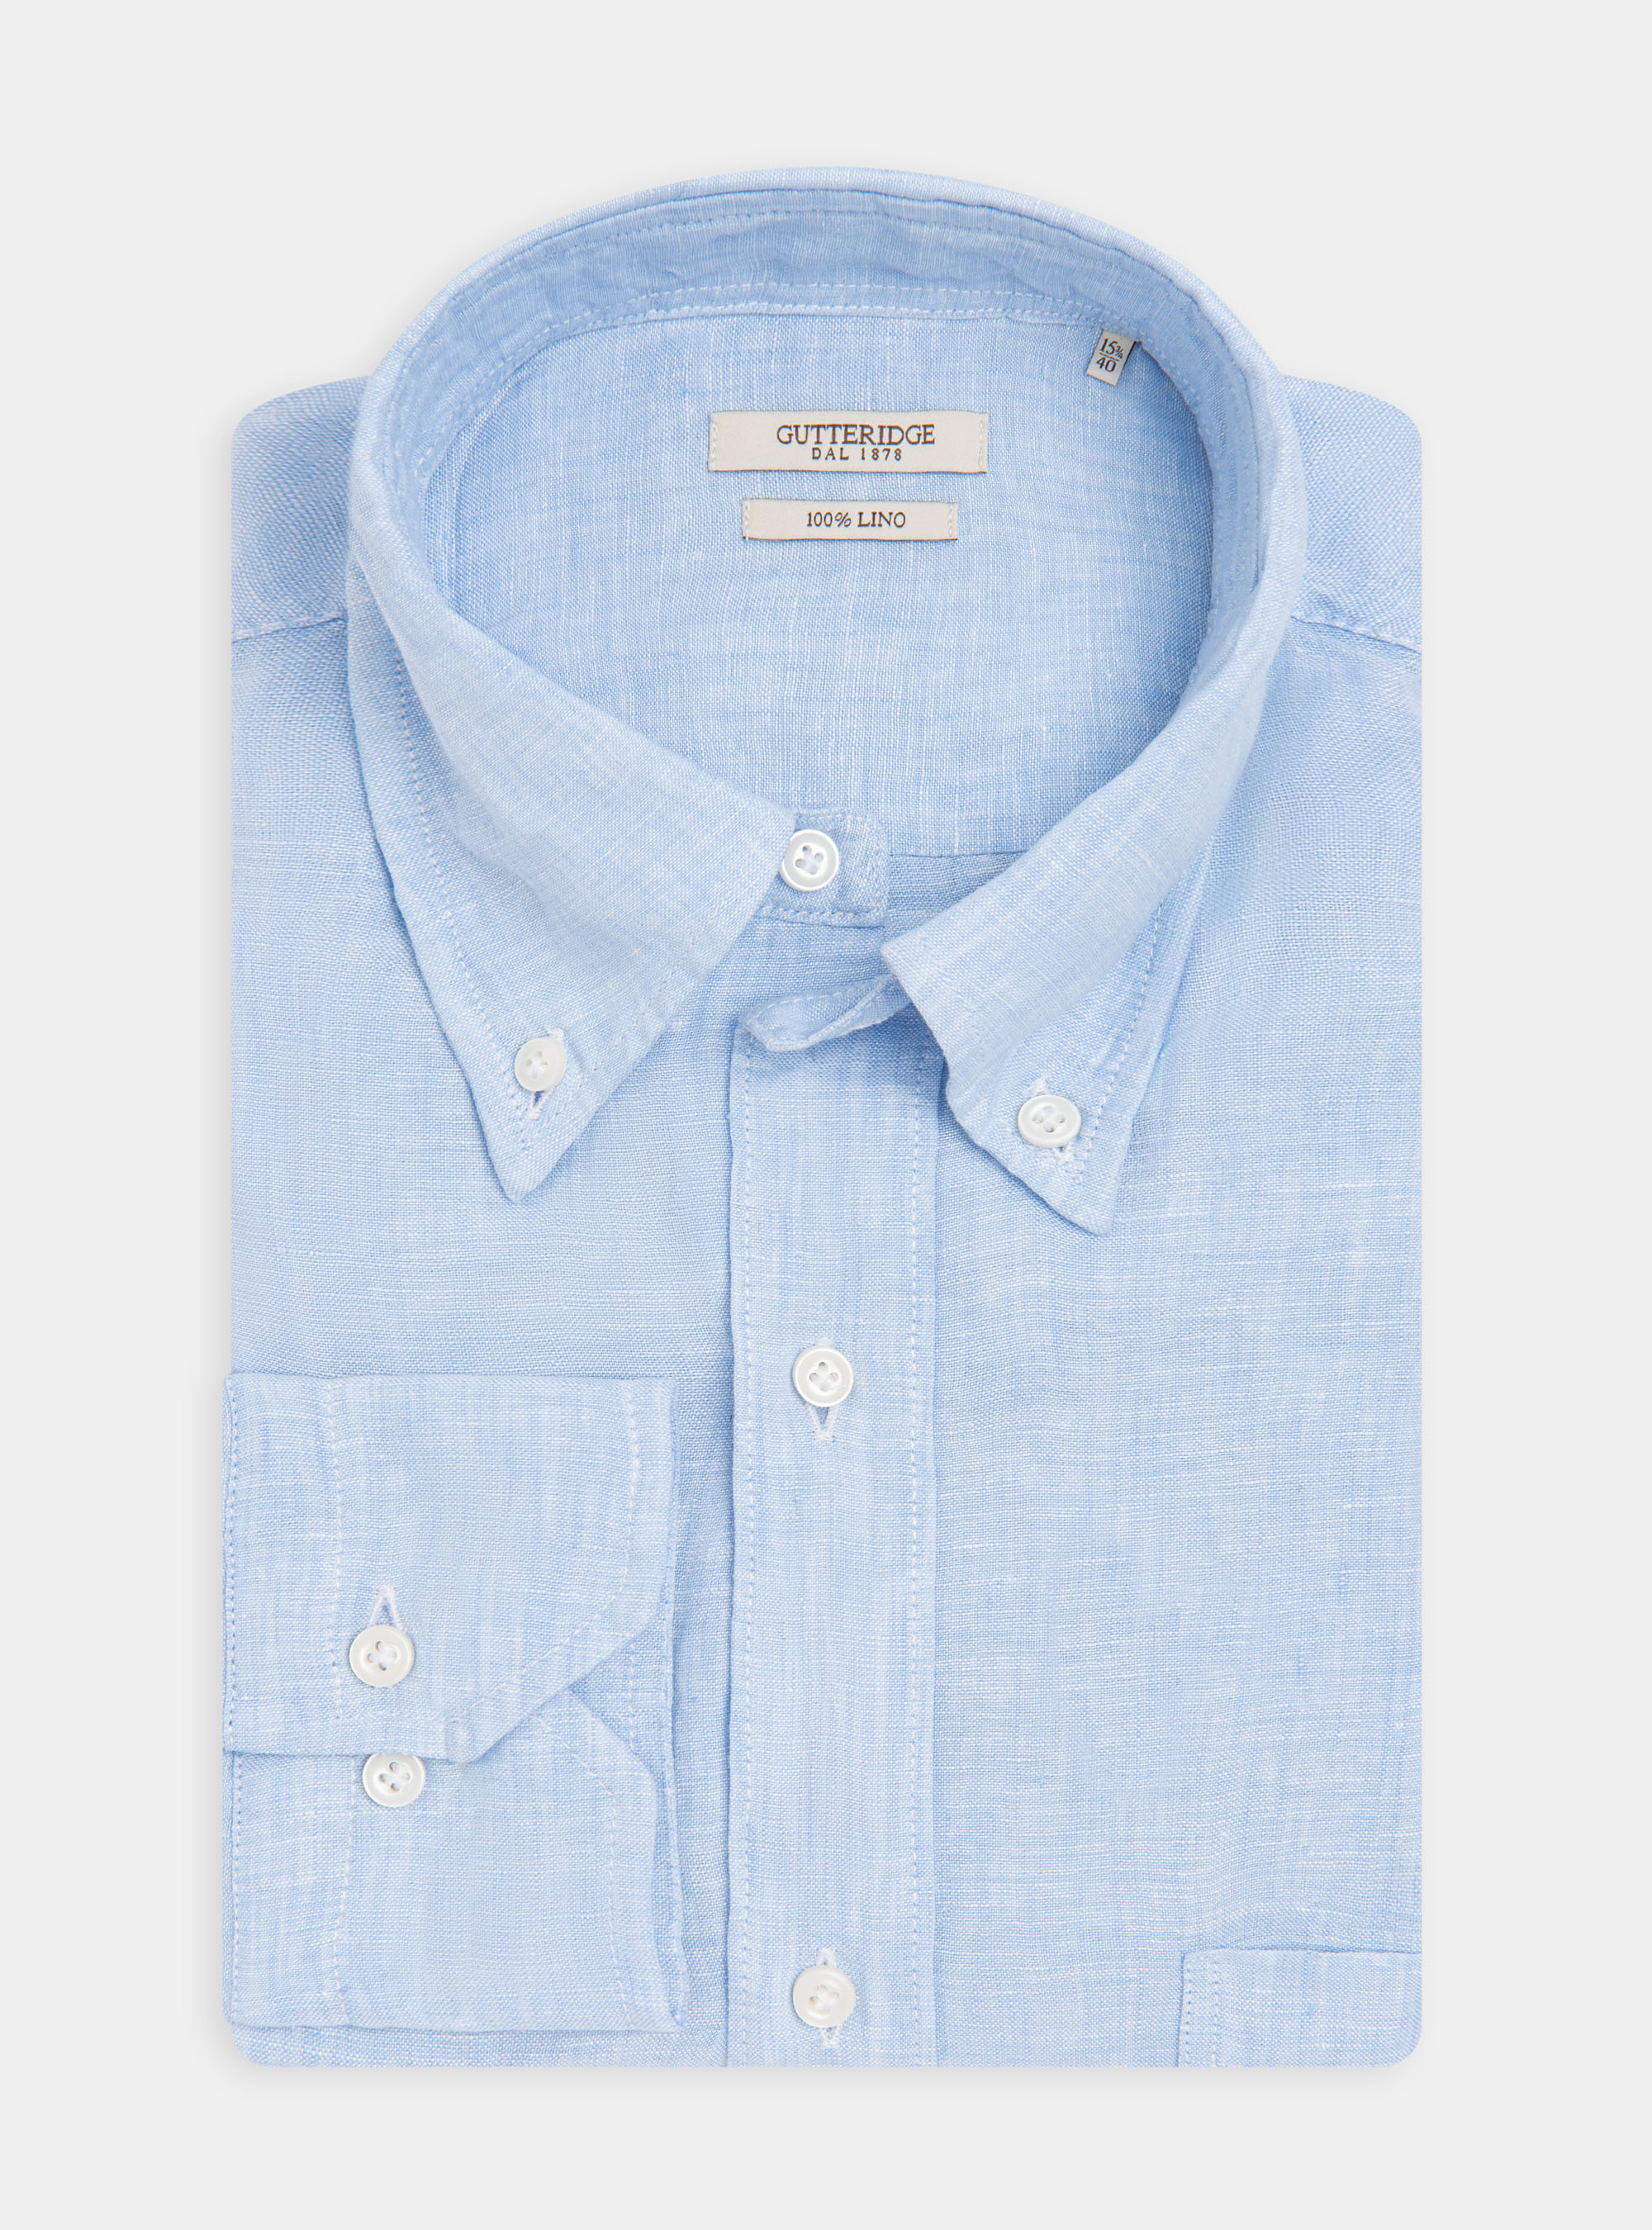 Camisa de lino puro con cuello abotonado | GutteridgeEU | catalog ...